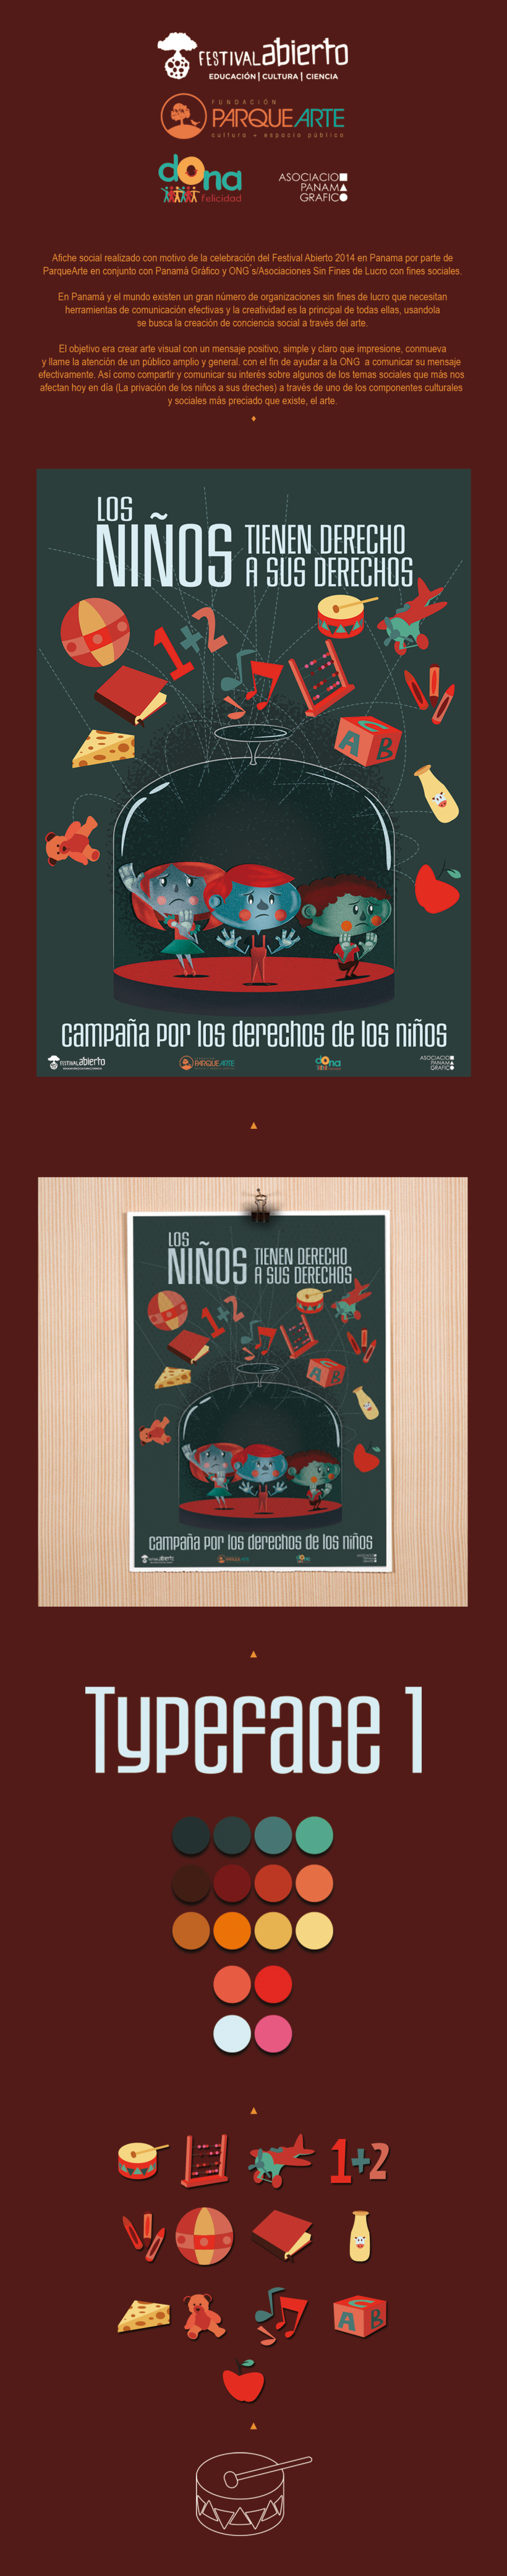 CAMPAÑA POR LOS DERECHOS DE LOS NIÑOS (Poster) 0